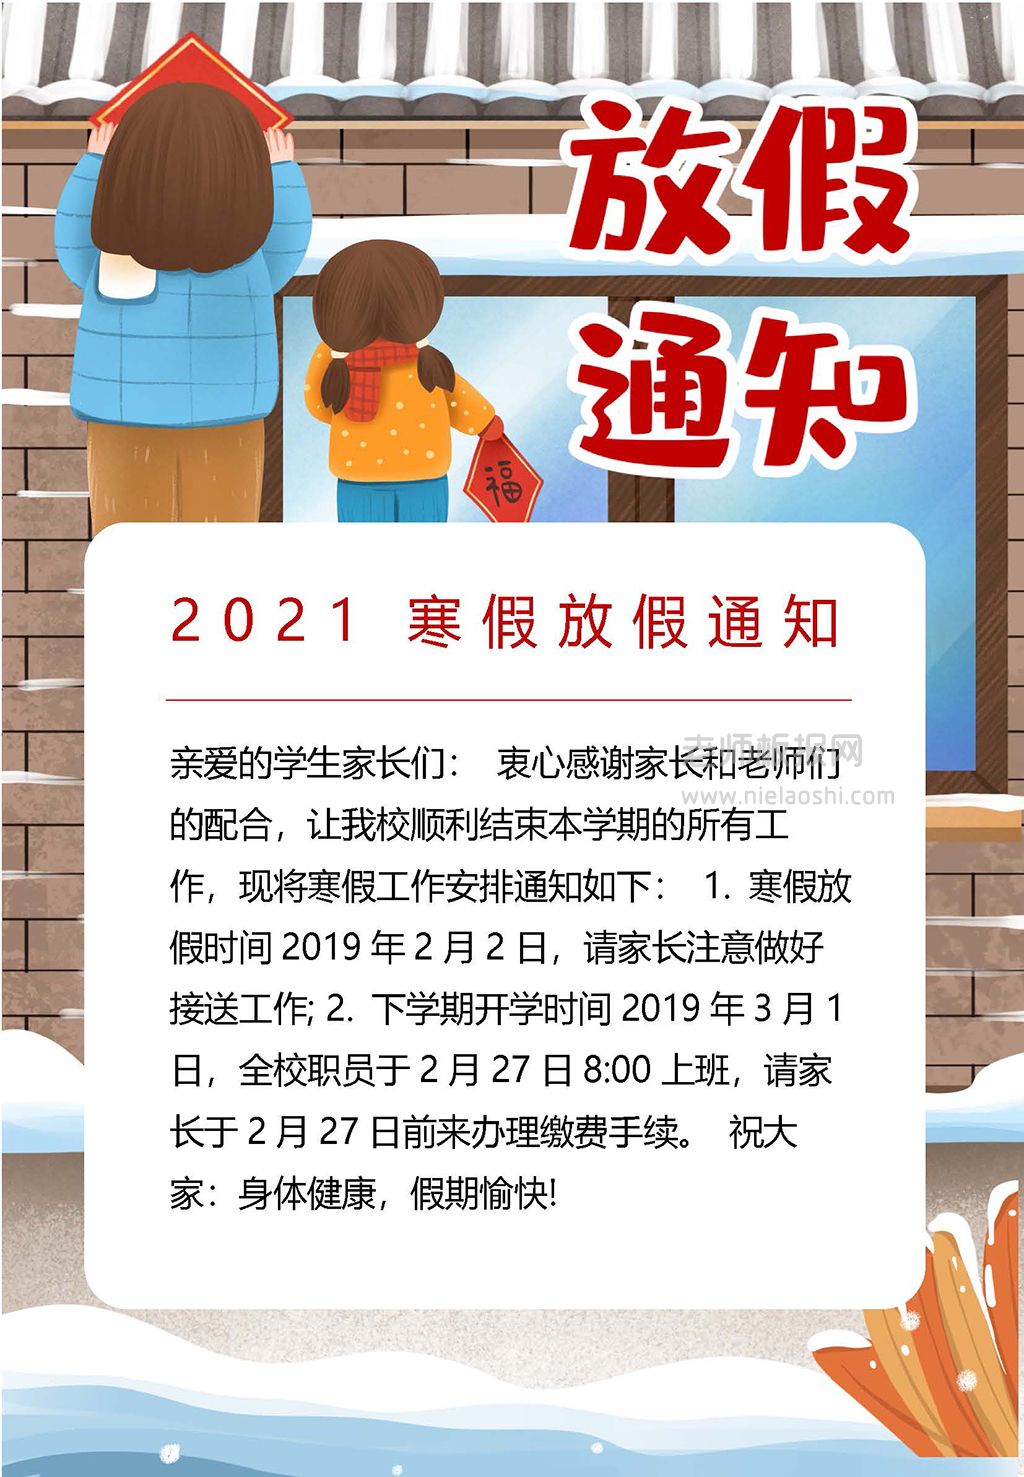 2021寒假放假通知手抄报电子小报下载